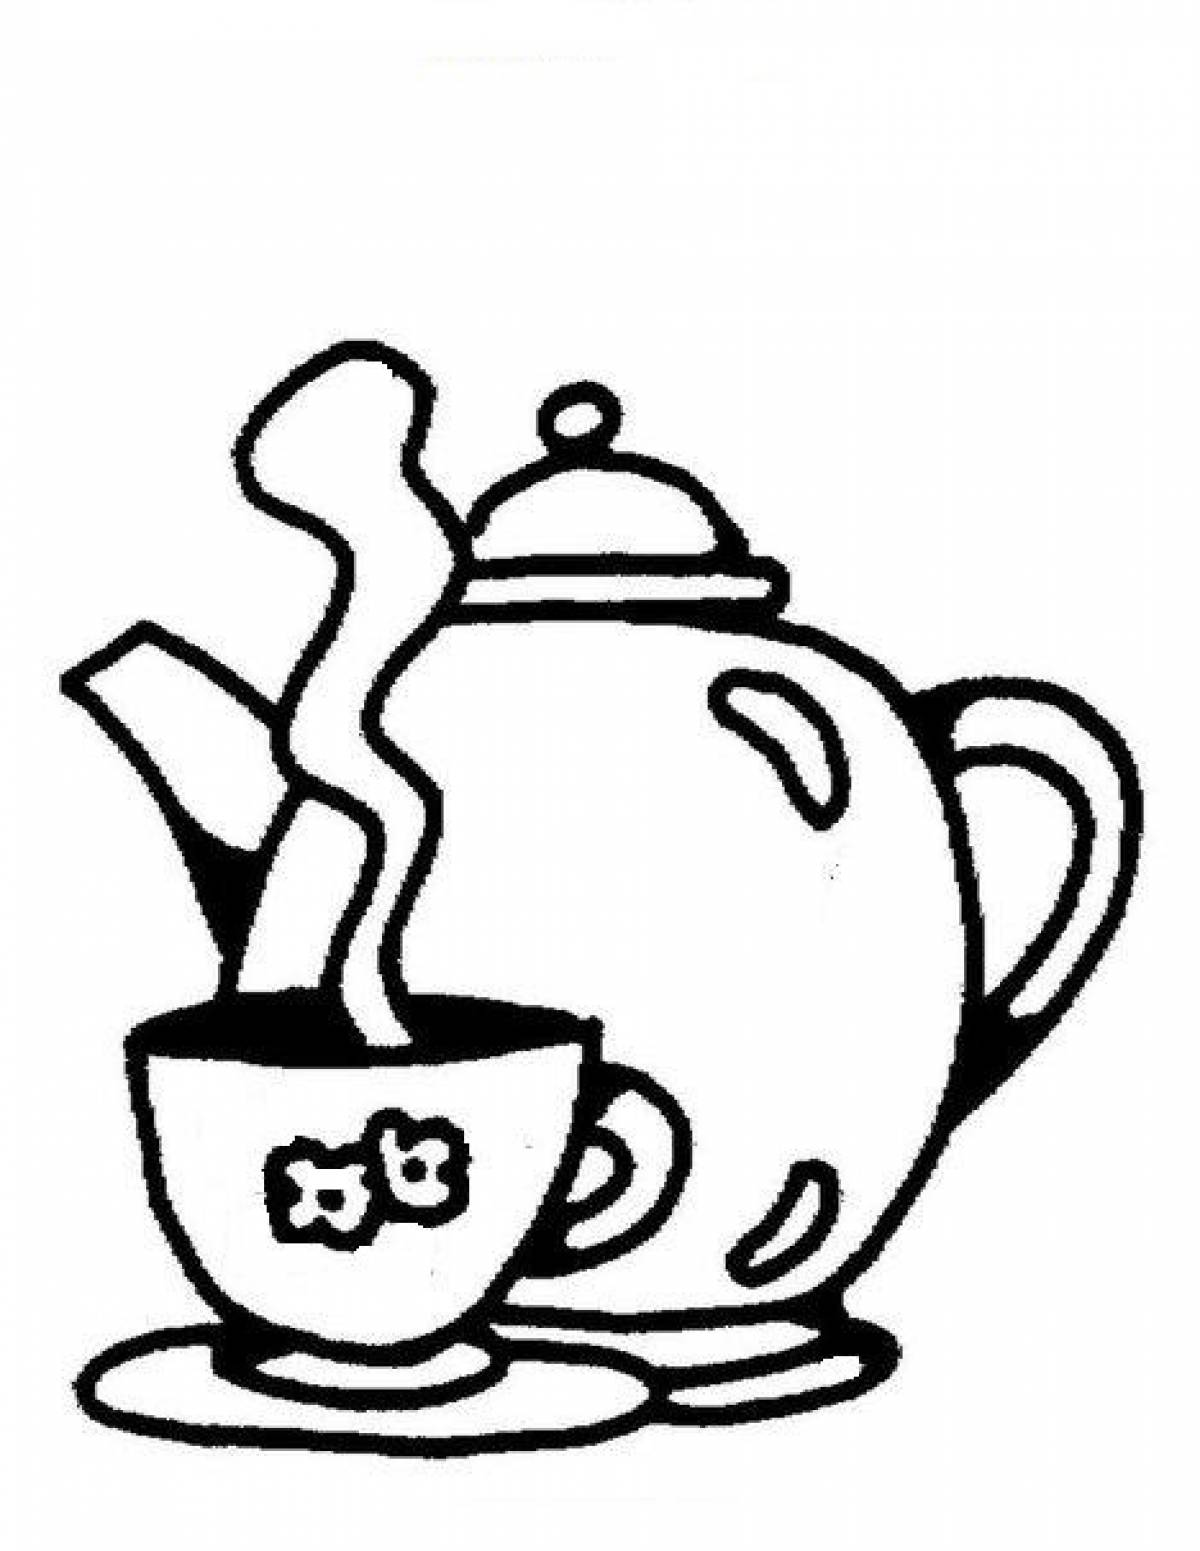 Teapot and mug